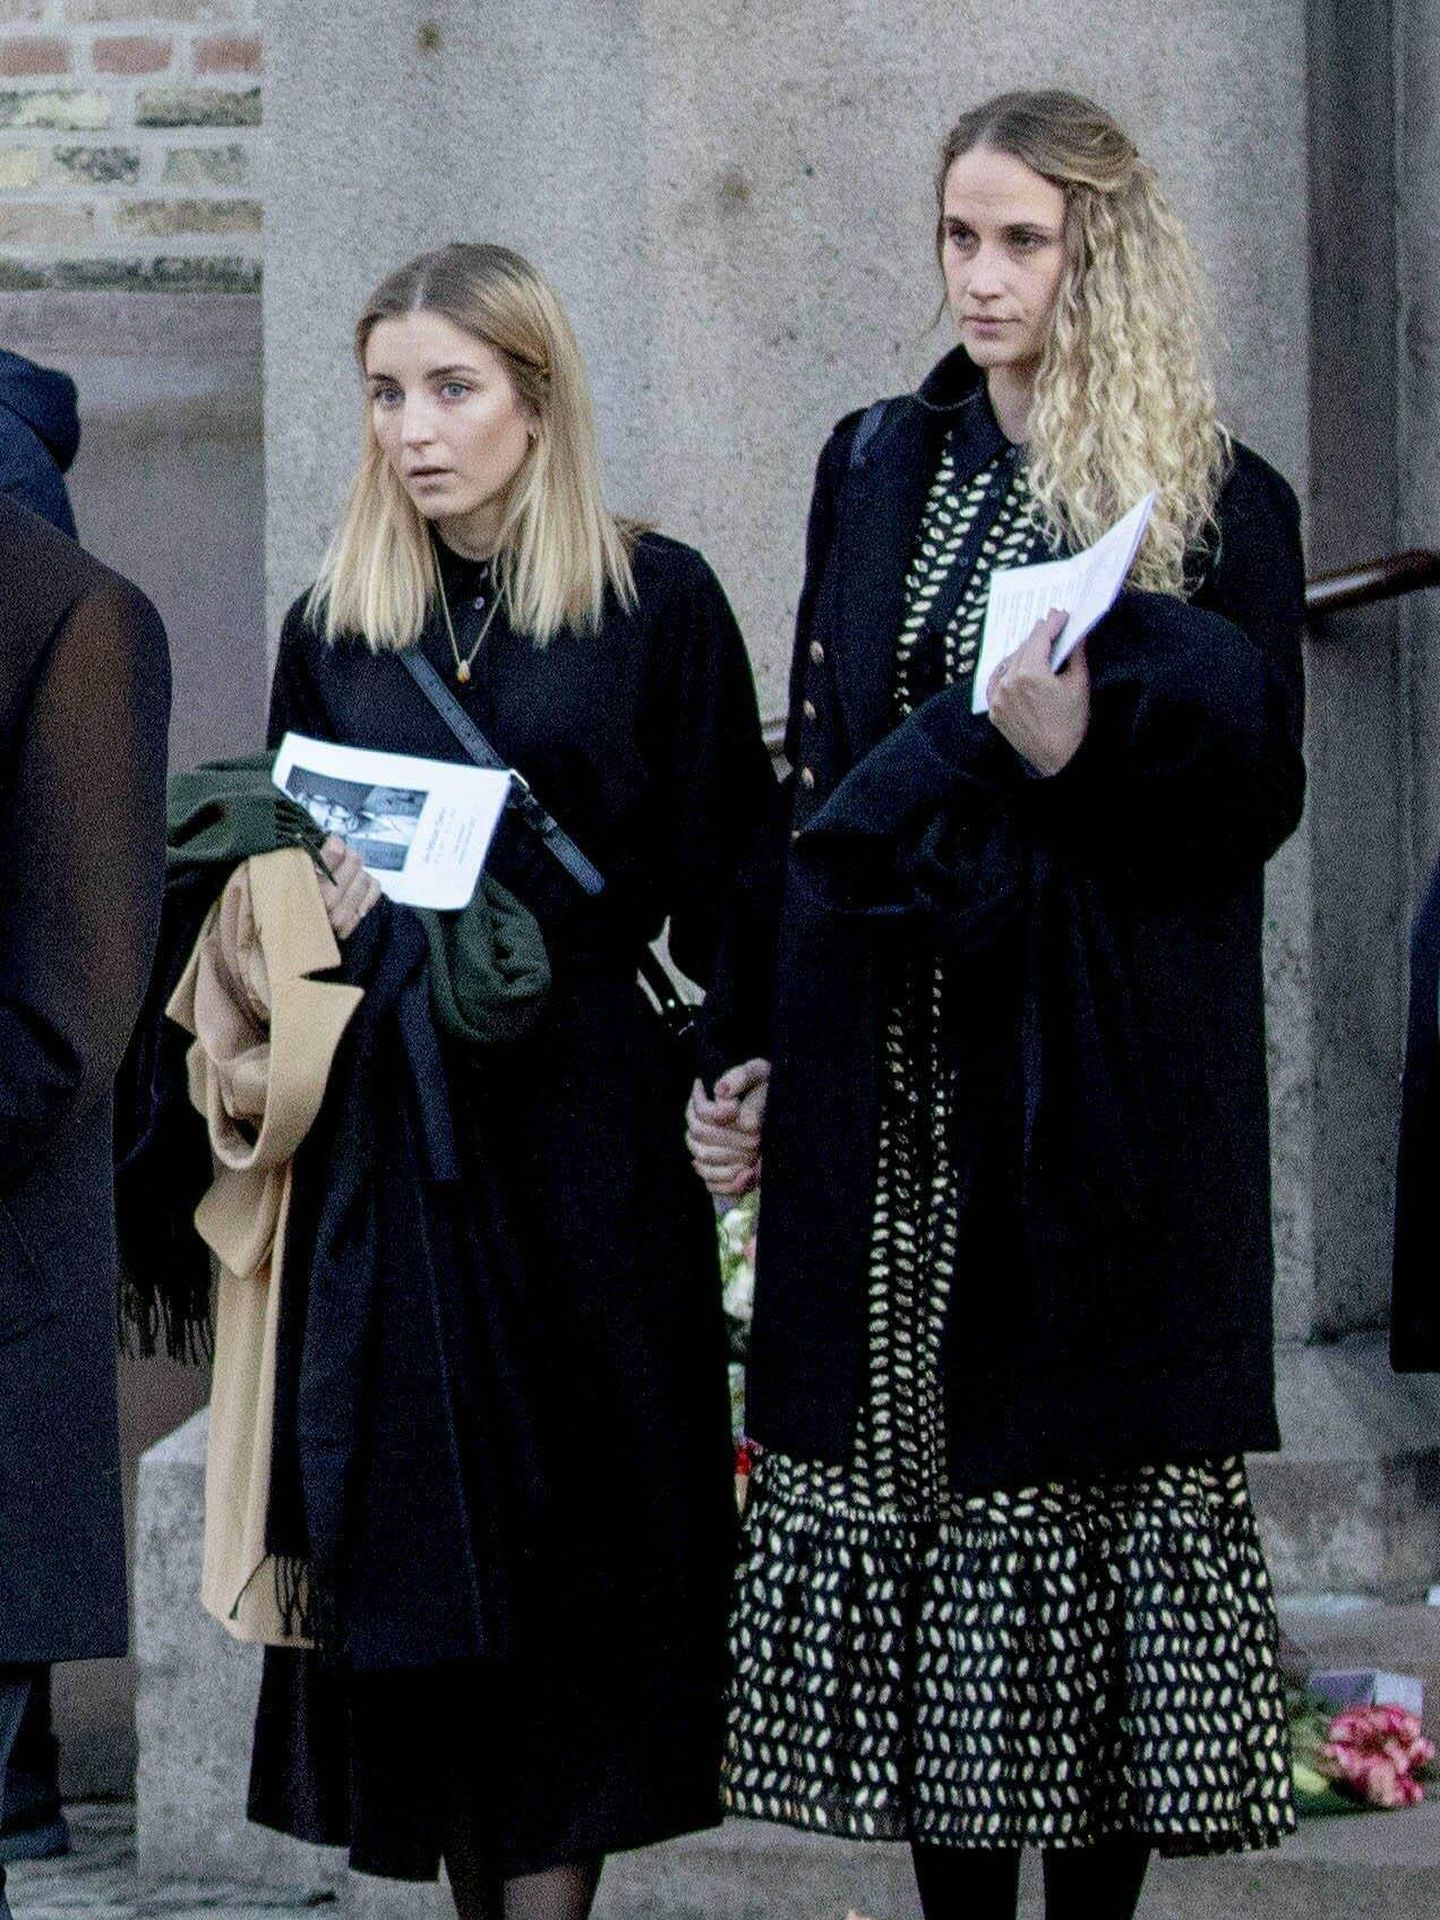 La novia de Ari Behn, a la derecha, en el funeral de este. (Cordon Press)